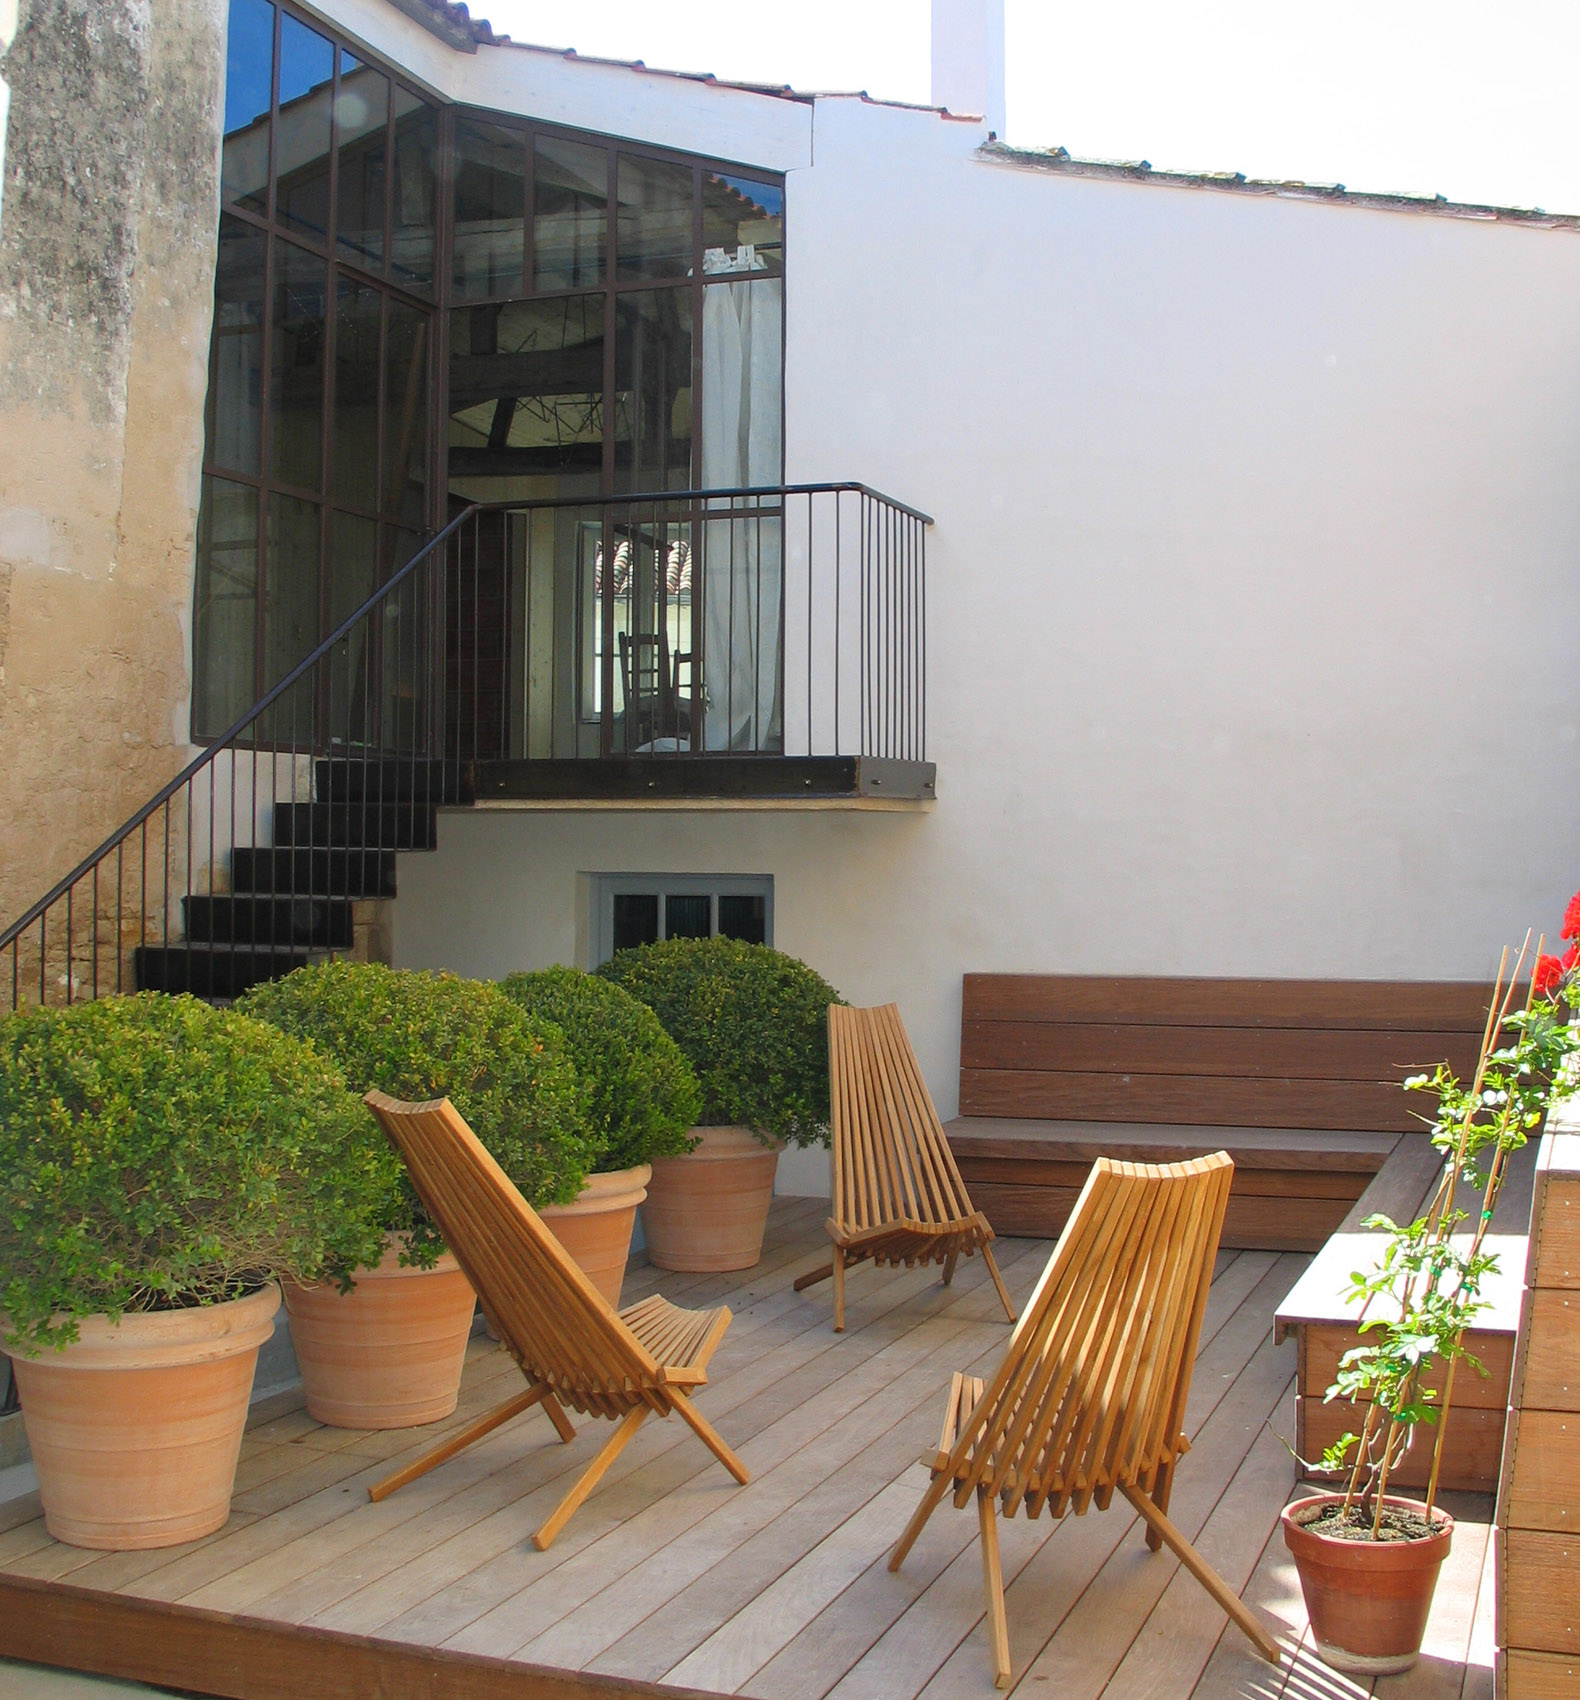 Louer salle avec terrasse pour séminaire Ars en ré - Hotel Le Senechal